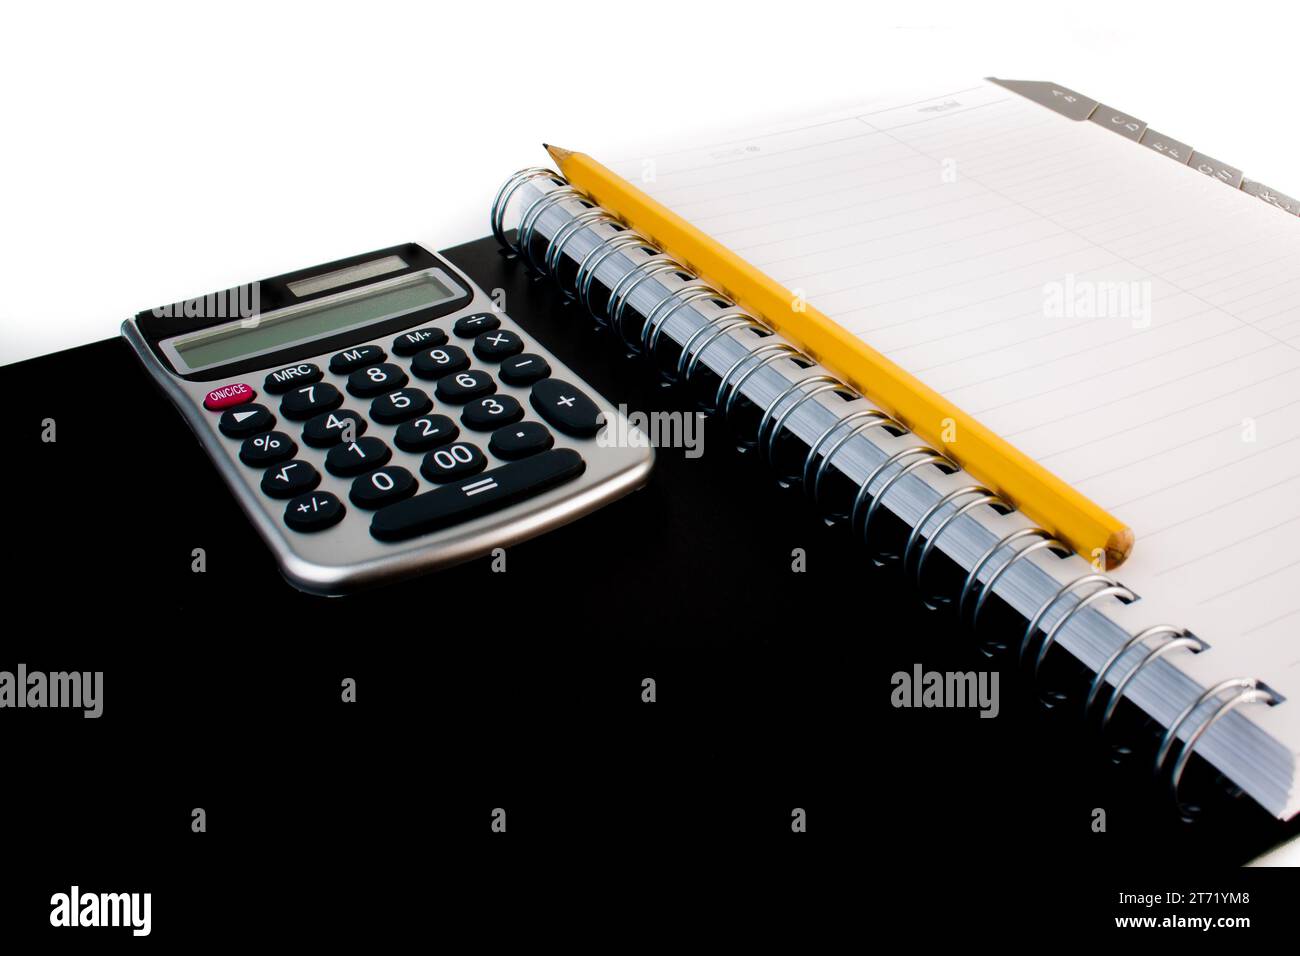 Dettaglio della calcolatrice su un organizzatore personale; dettaglio della calcolatrice su un organizzatore personale Foto Stock